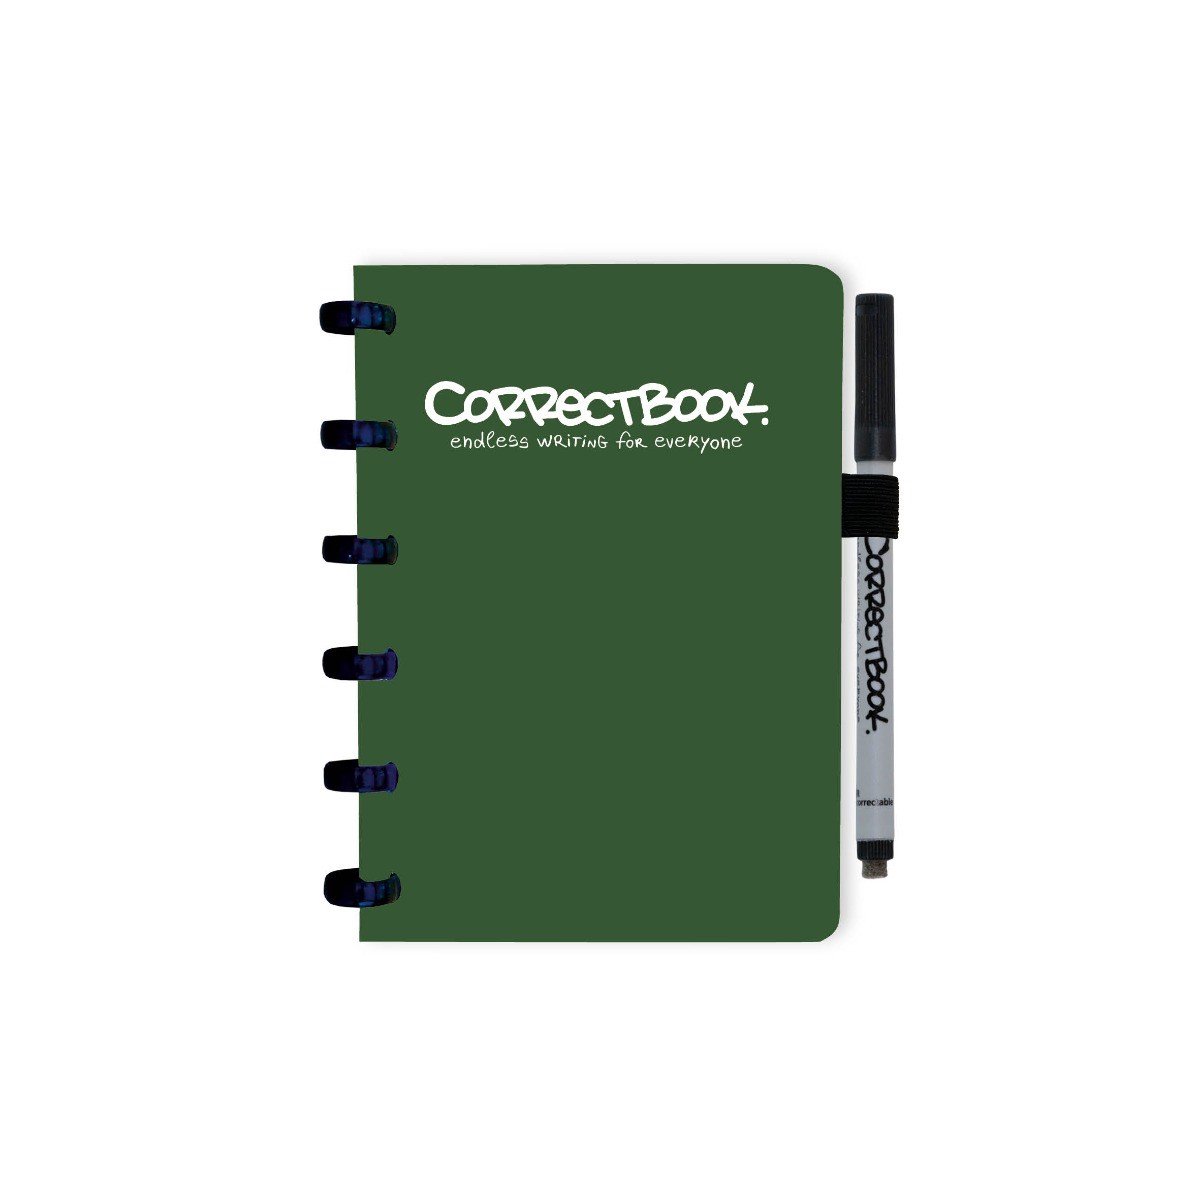 Correctbook Original A6 Forest Green-Gelinieerd - Uitwisbaar / Whiteboard Notitieboek - Correctbook